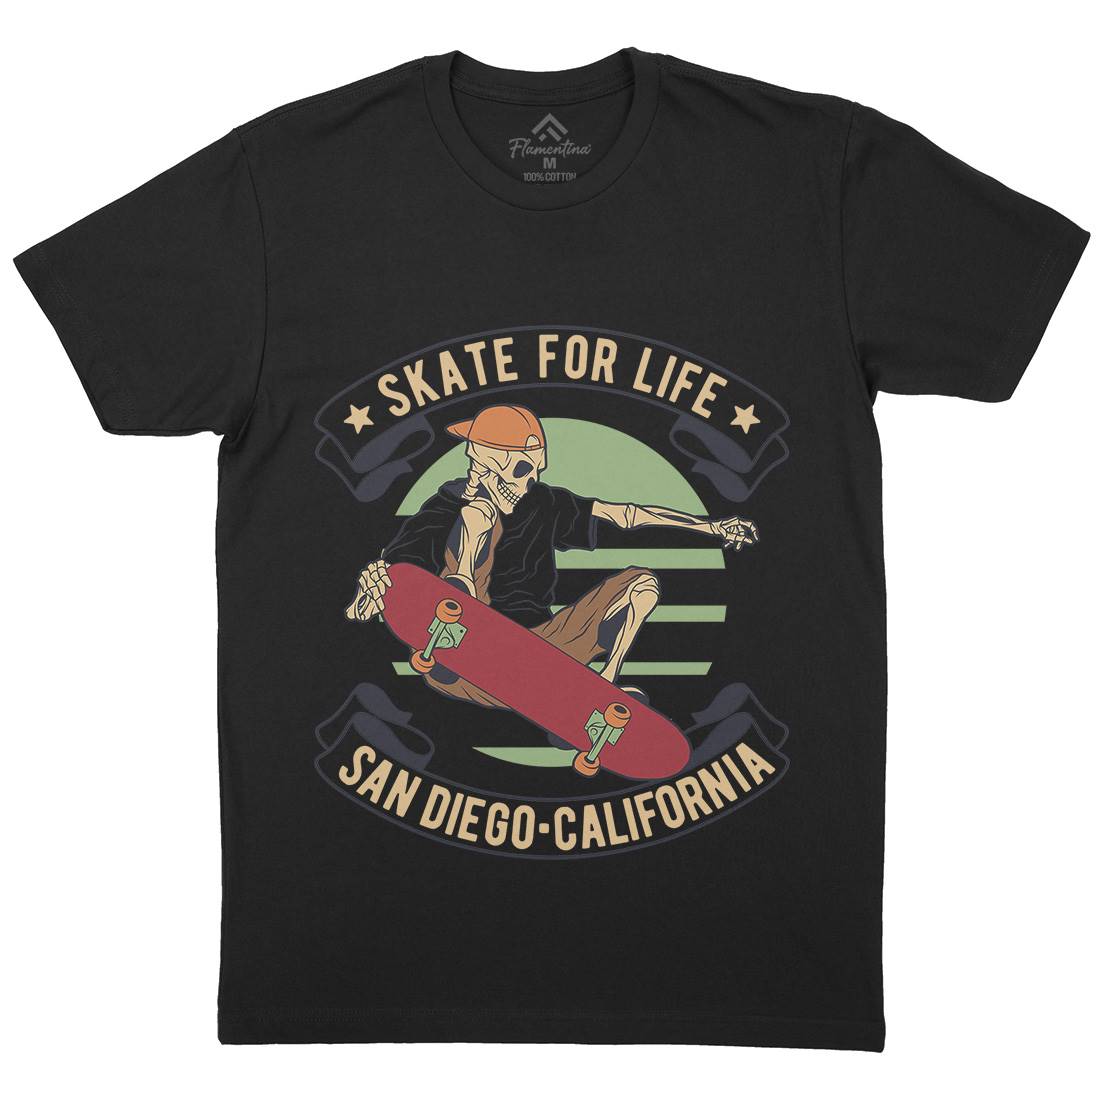 For Life Mens Crew Neck T-Shirt Skate D970